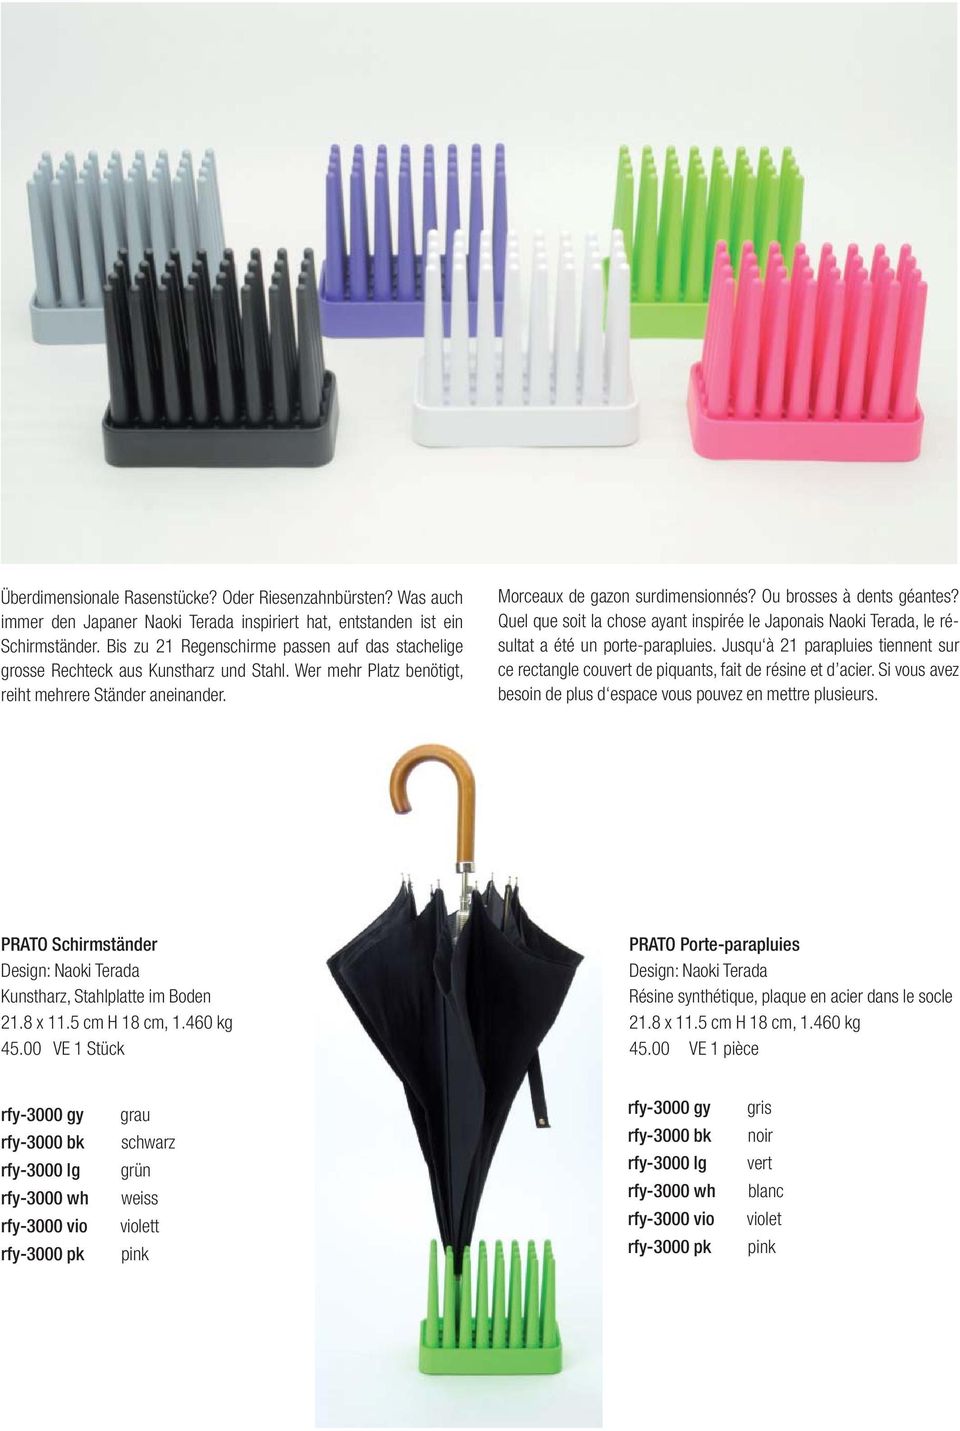 Ou brosses à dents géantes? Quel que soit la chose ayant inspirée le Japonais Naoki Terada, le résultat a été un porte-parapluies.